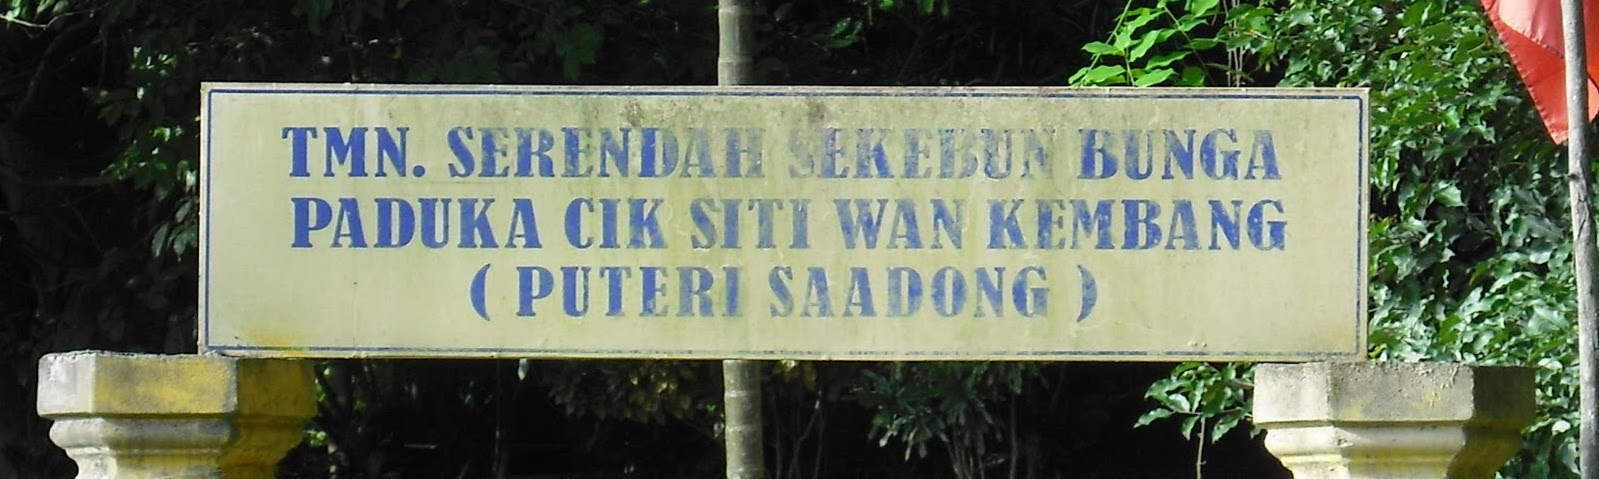 Gambar Cik Siti Wan Kembang : Bazı tarihi kayıtlara göre, cik siti wan